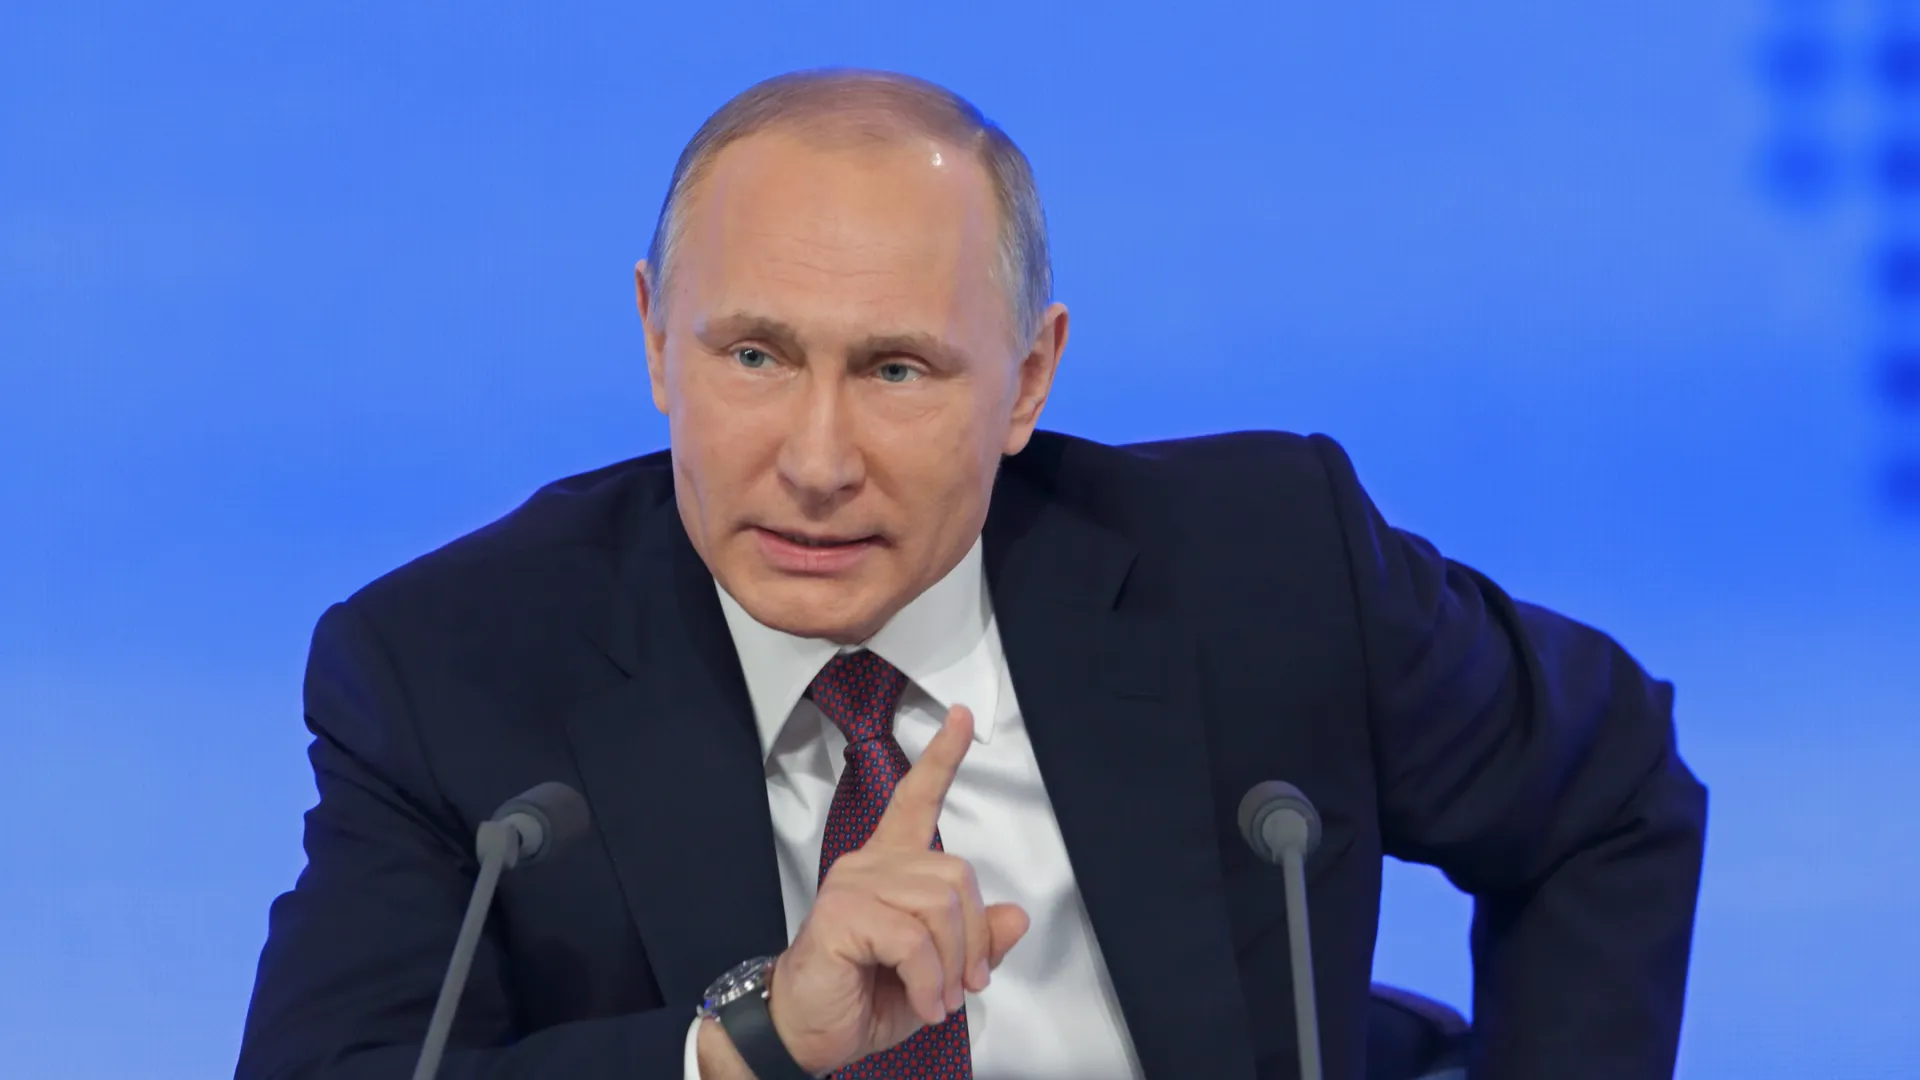 Владимир Путин проведет прямую линию в новом формате Фото: ID1974/Shutterstock/Fotodom